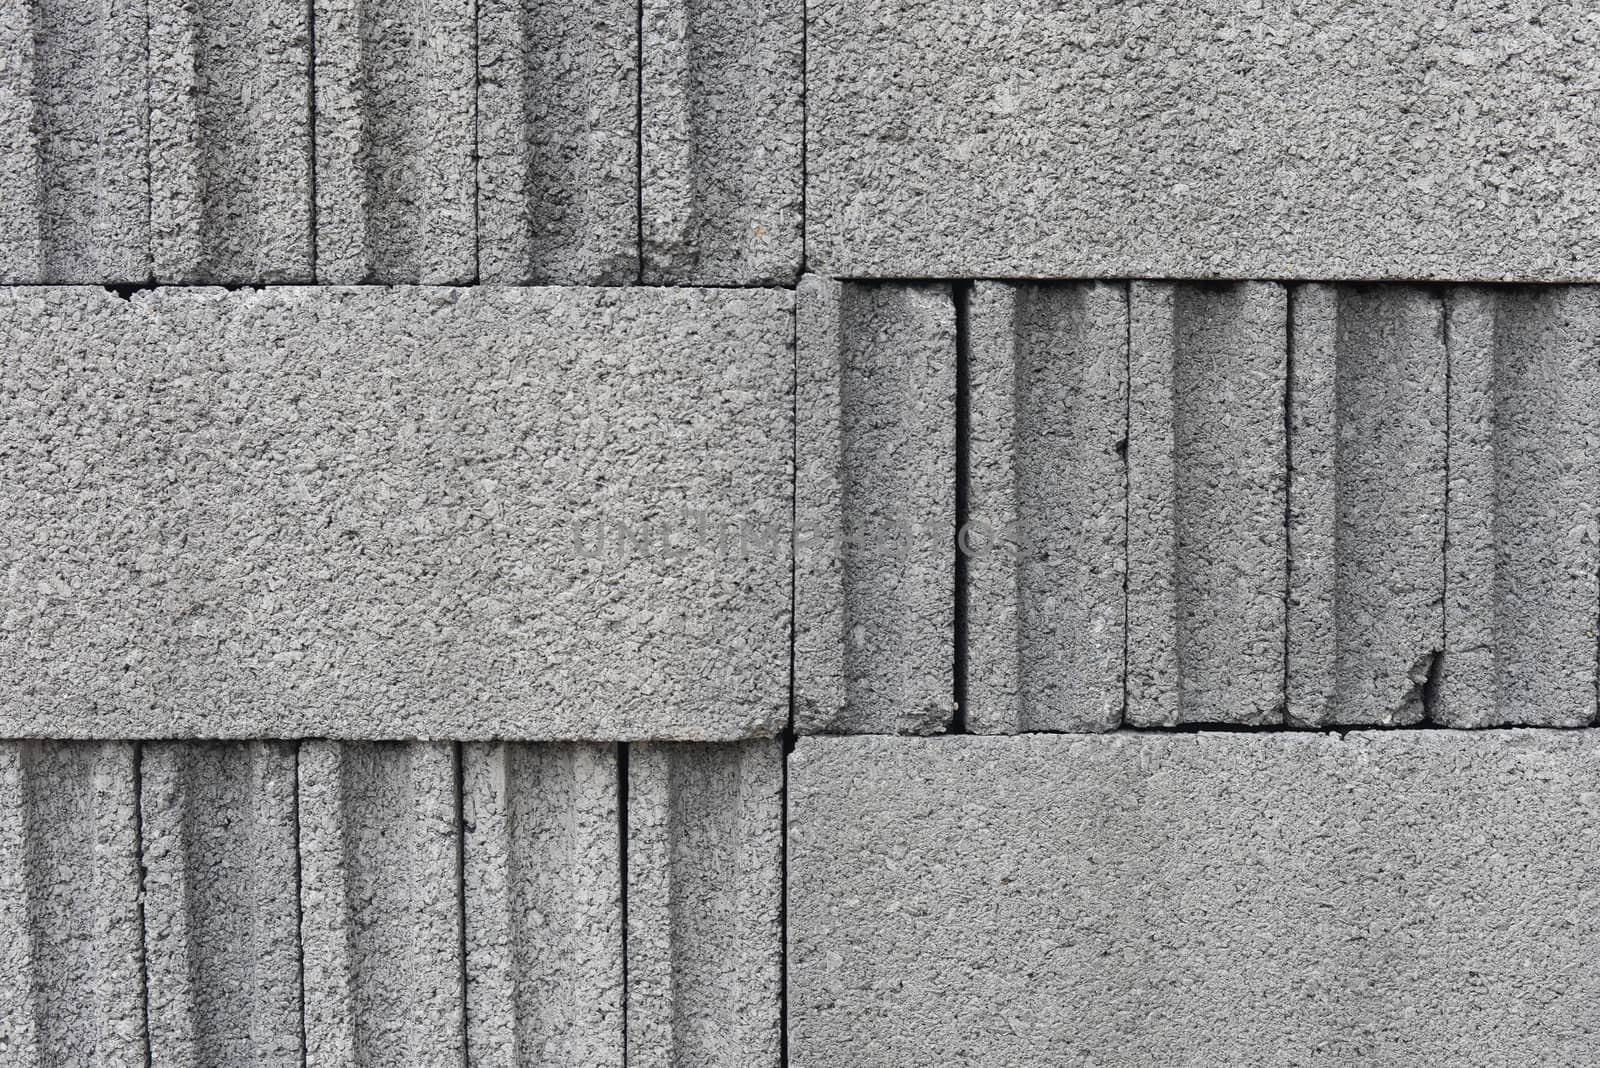 Concrete block as background texture